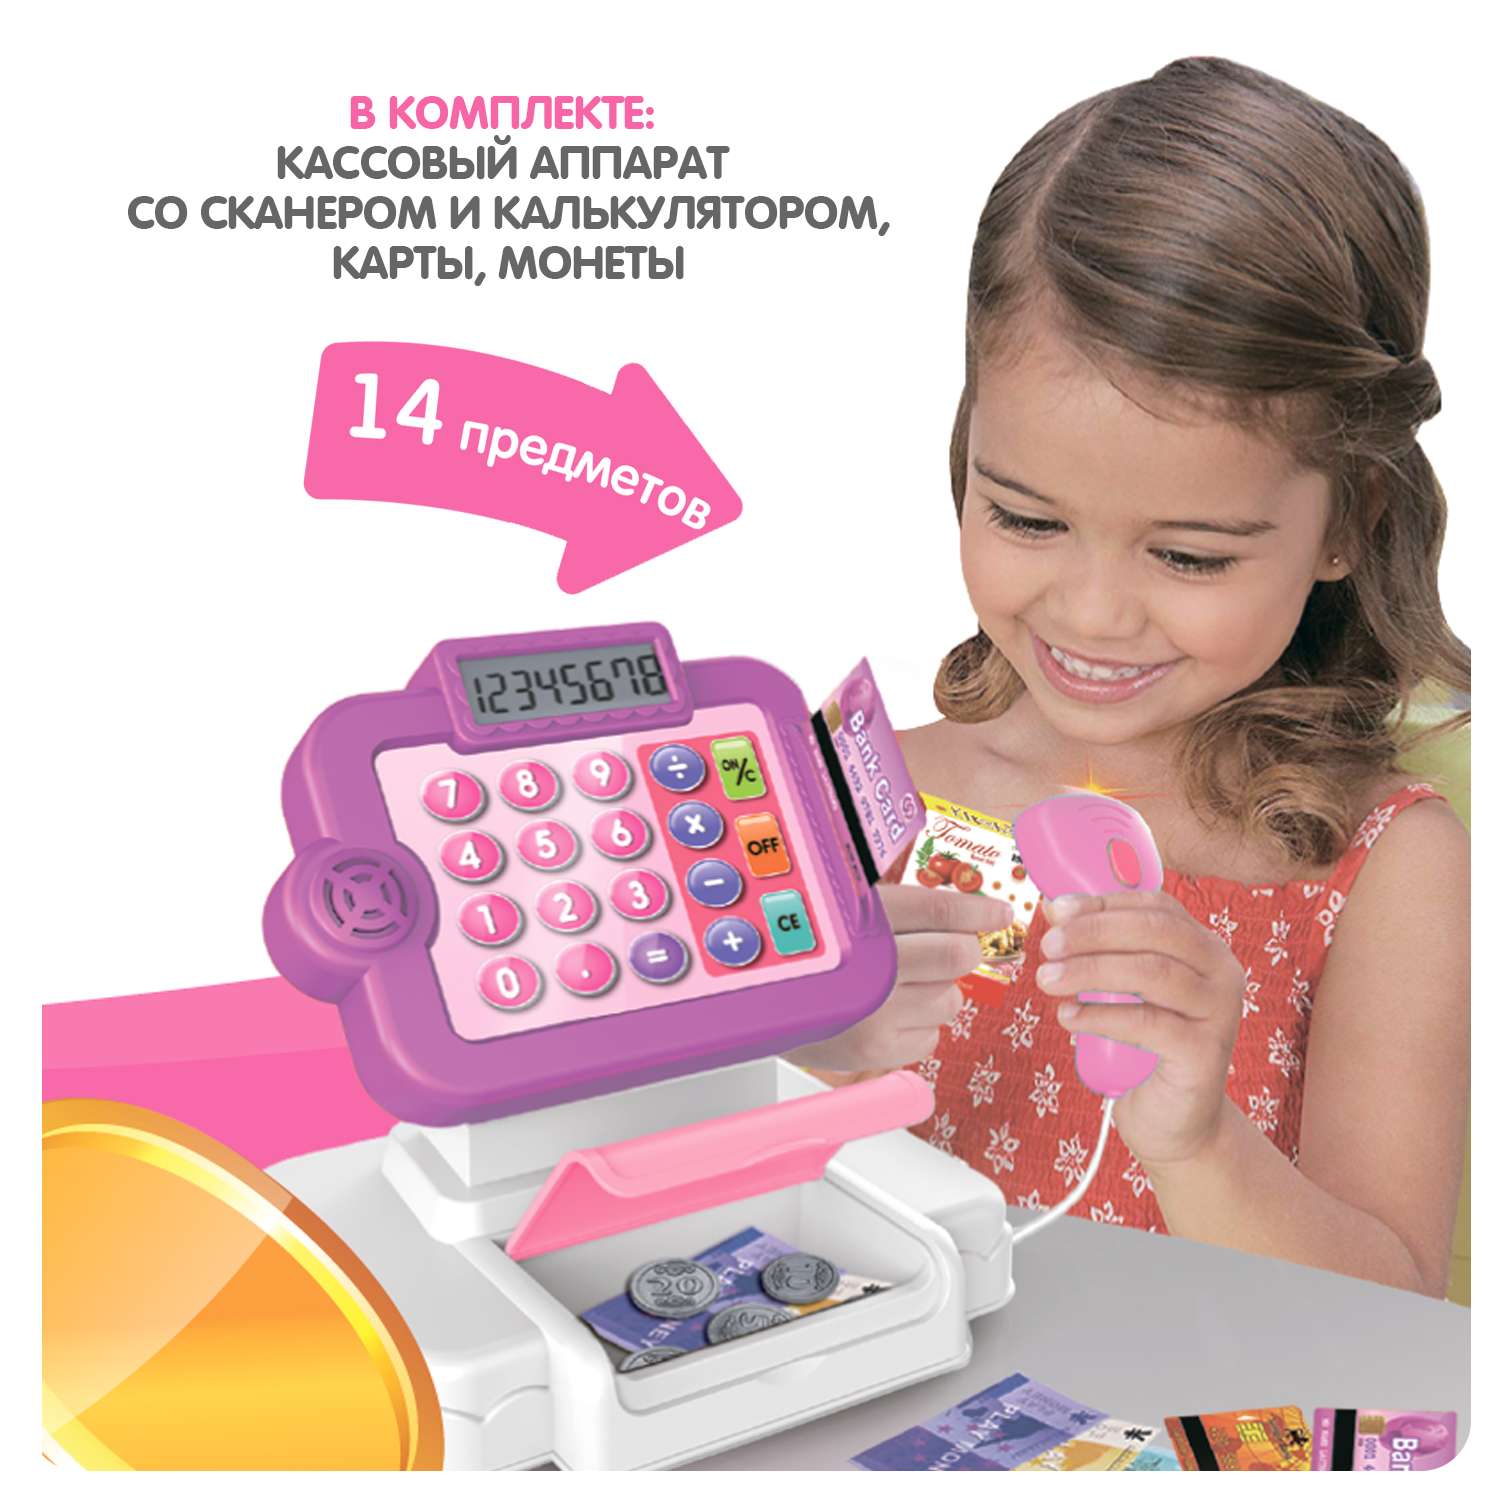 Развивающий игровой набор BONDIBON детская касса со сканером калькулятором и аксессуарами 14 предметов - фото 4